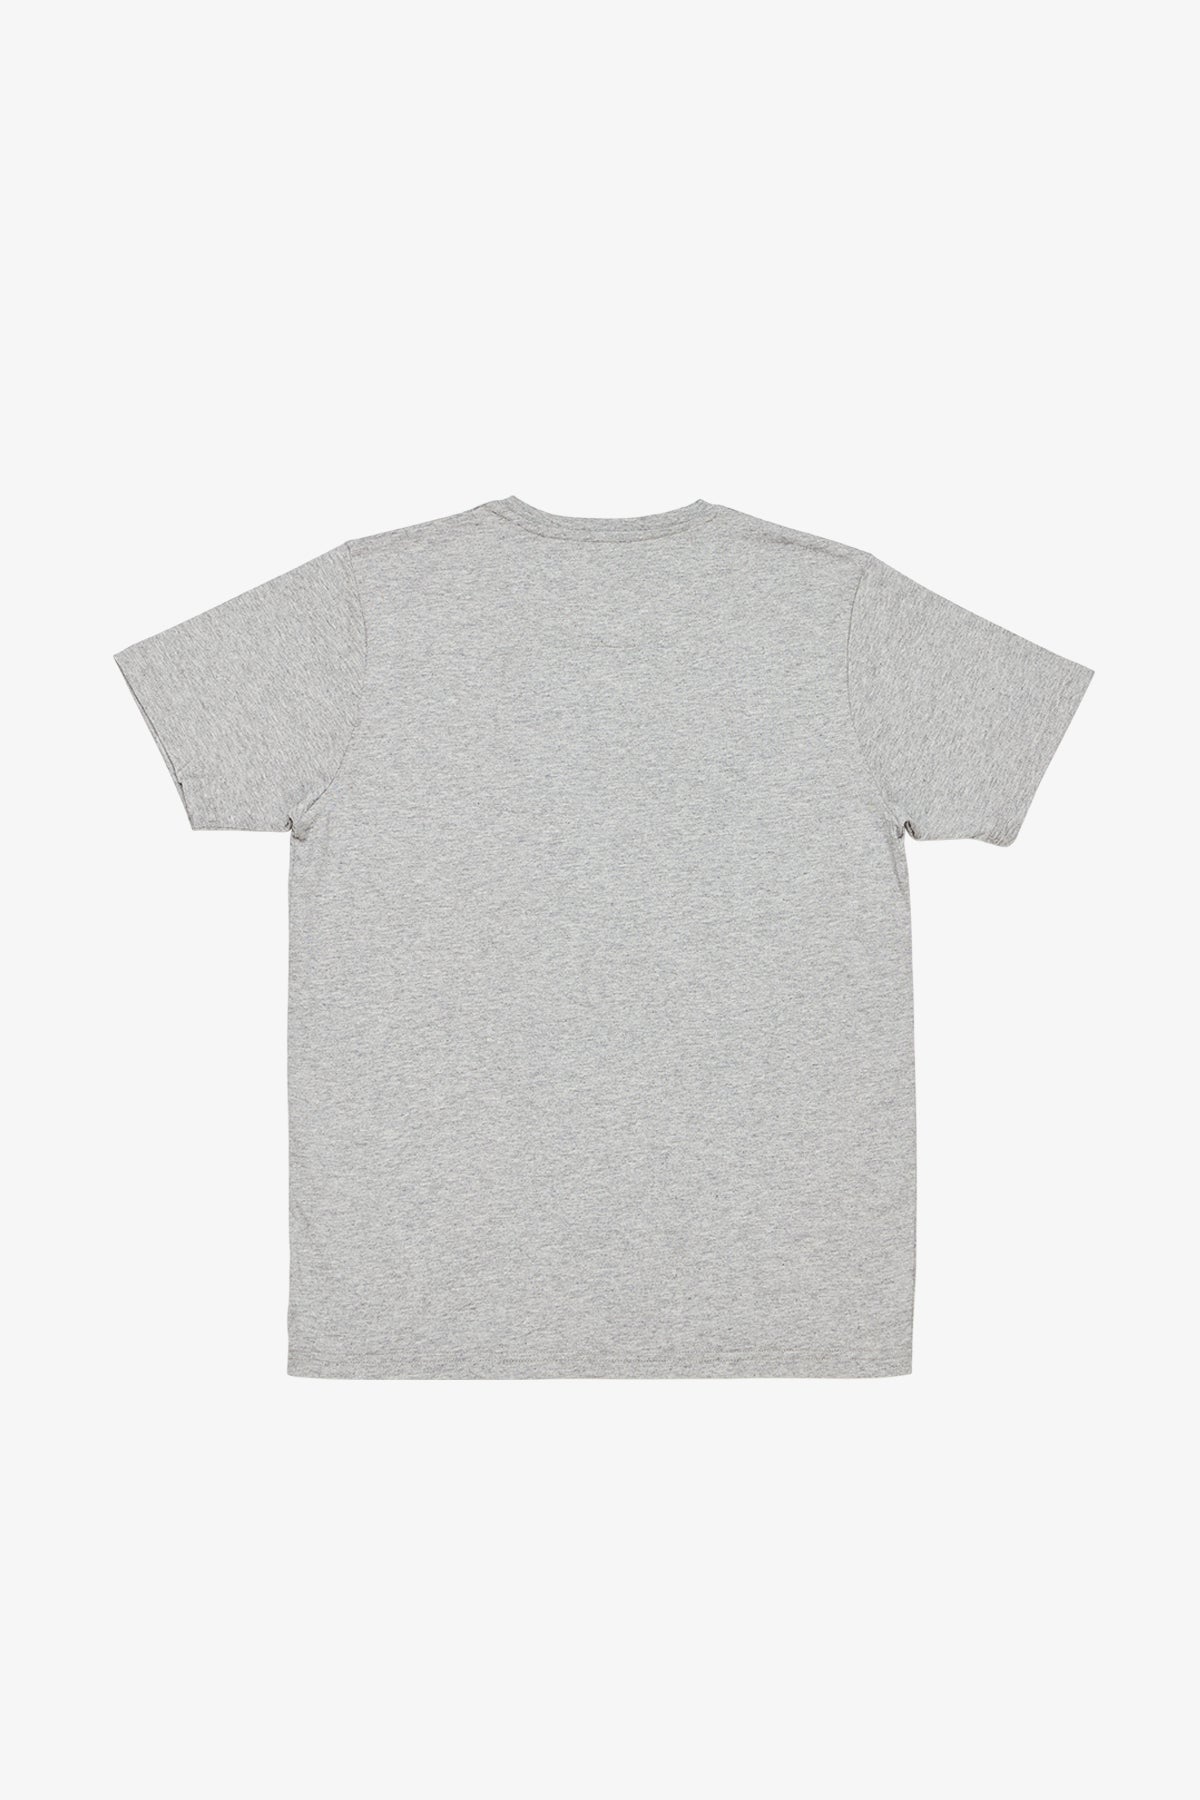 Edan - Mid Grey T-shirt